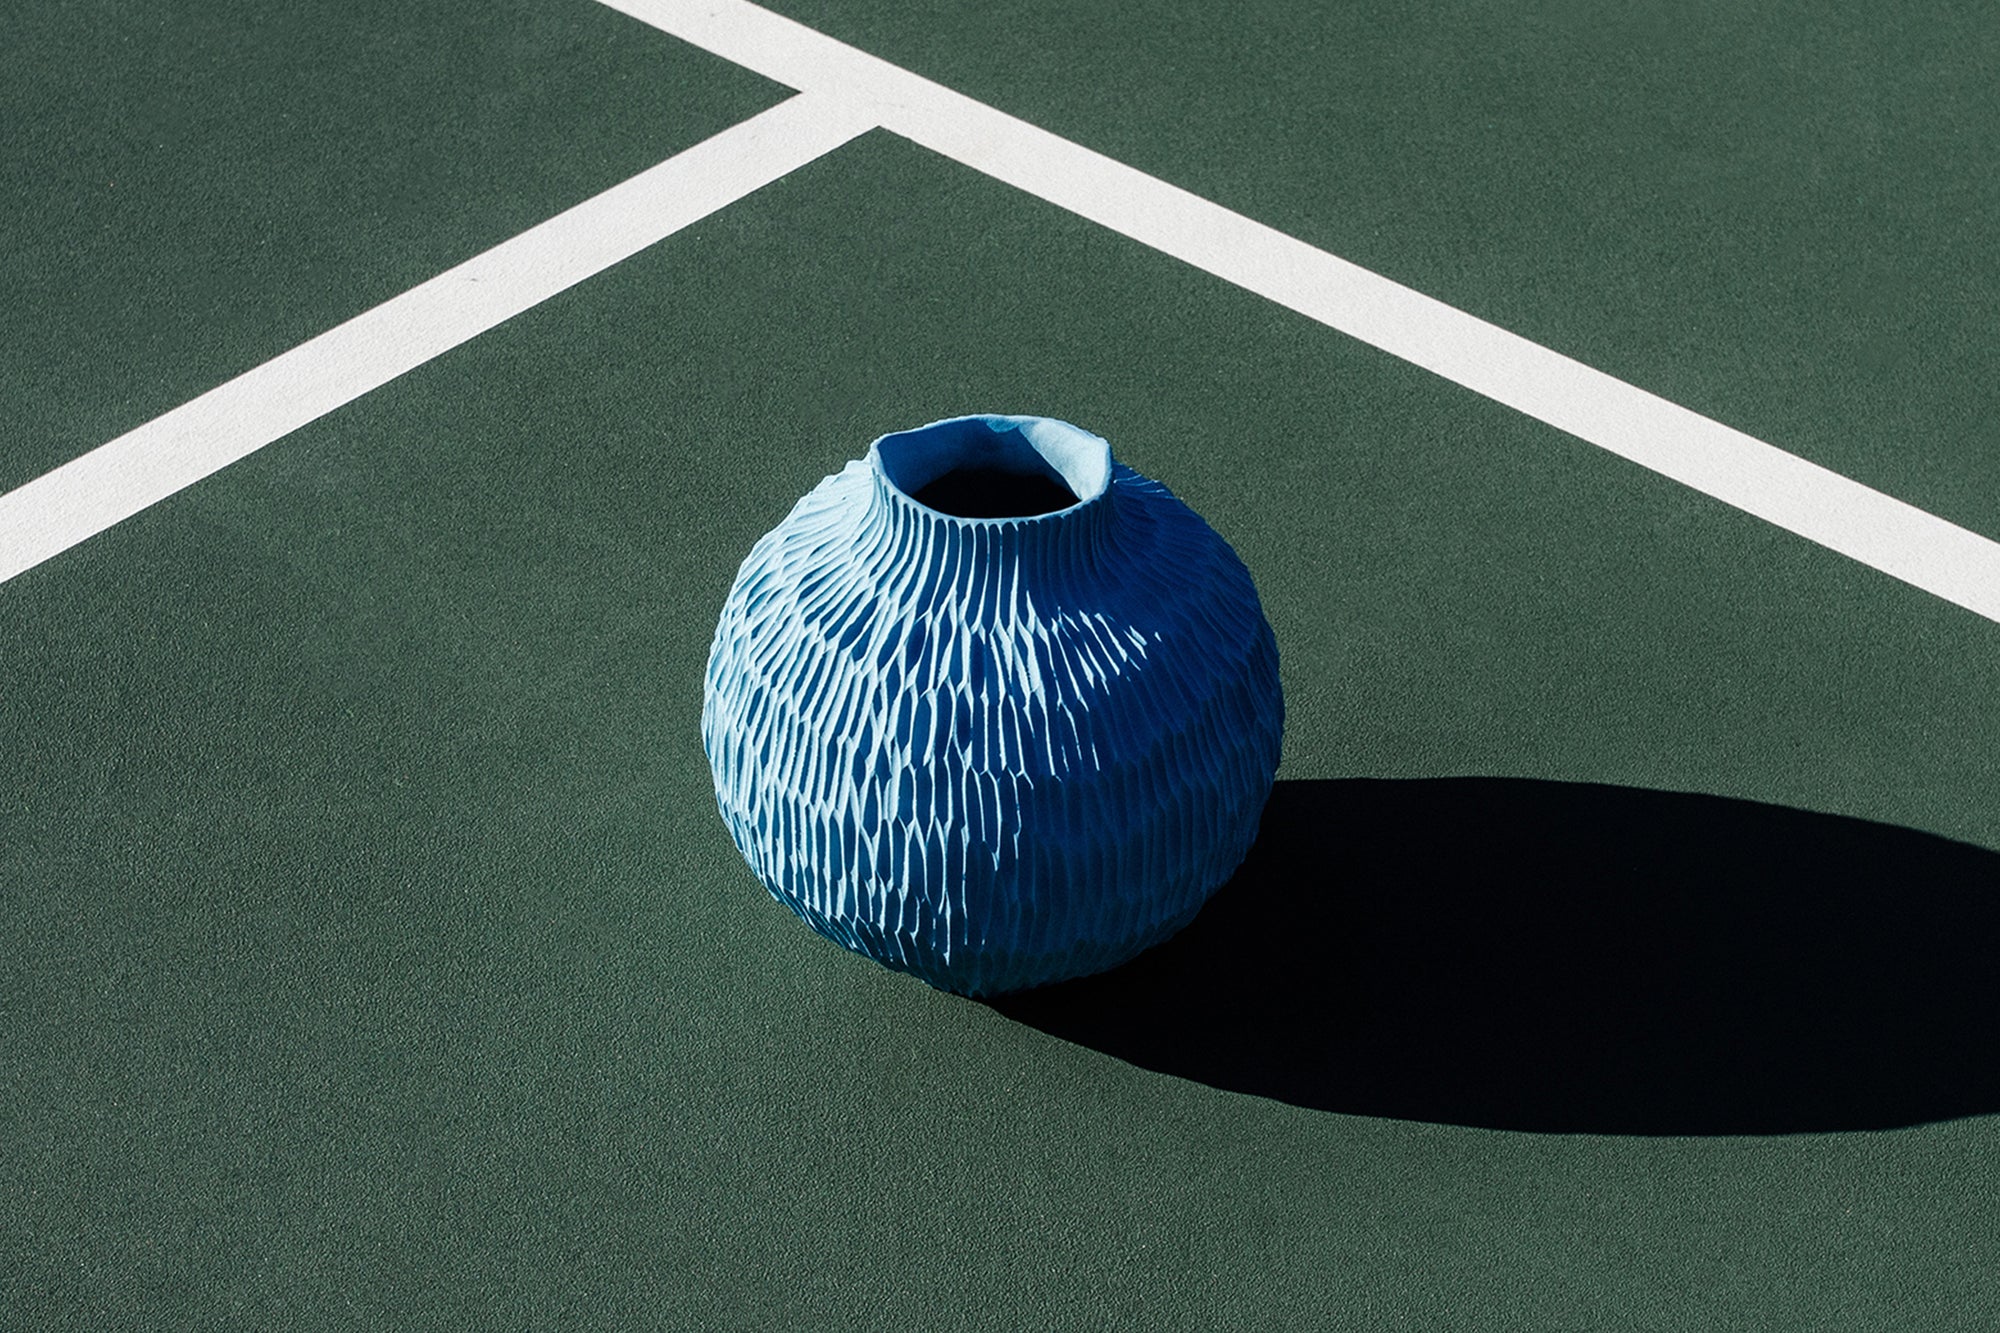 Curved Vase Light Blue